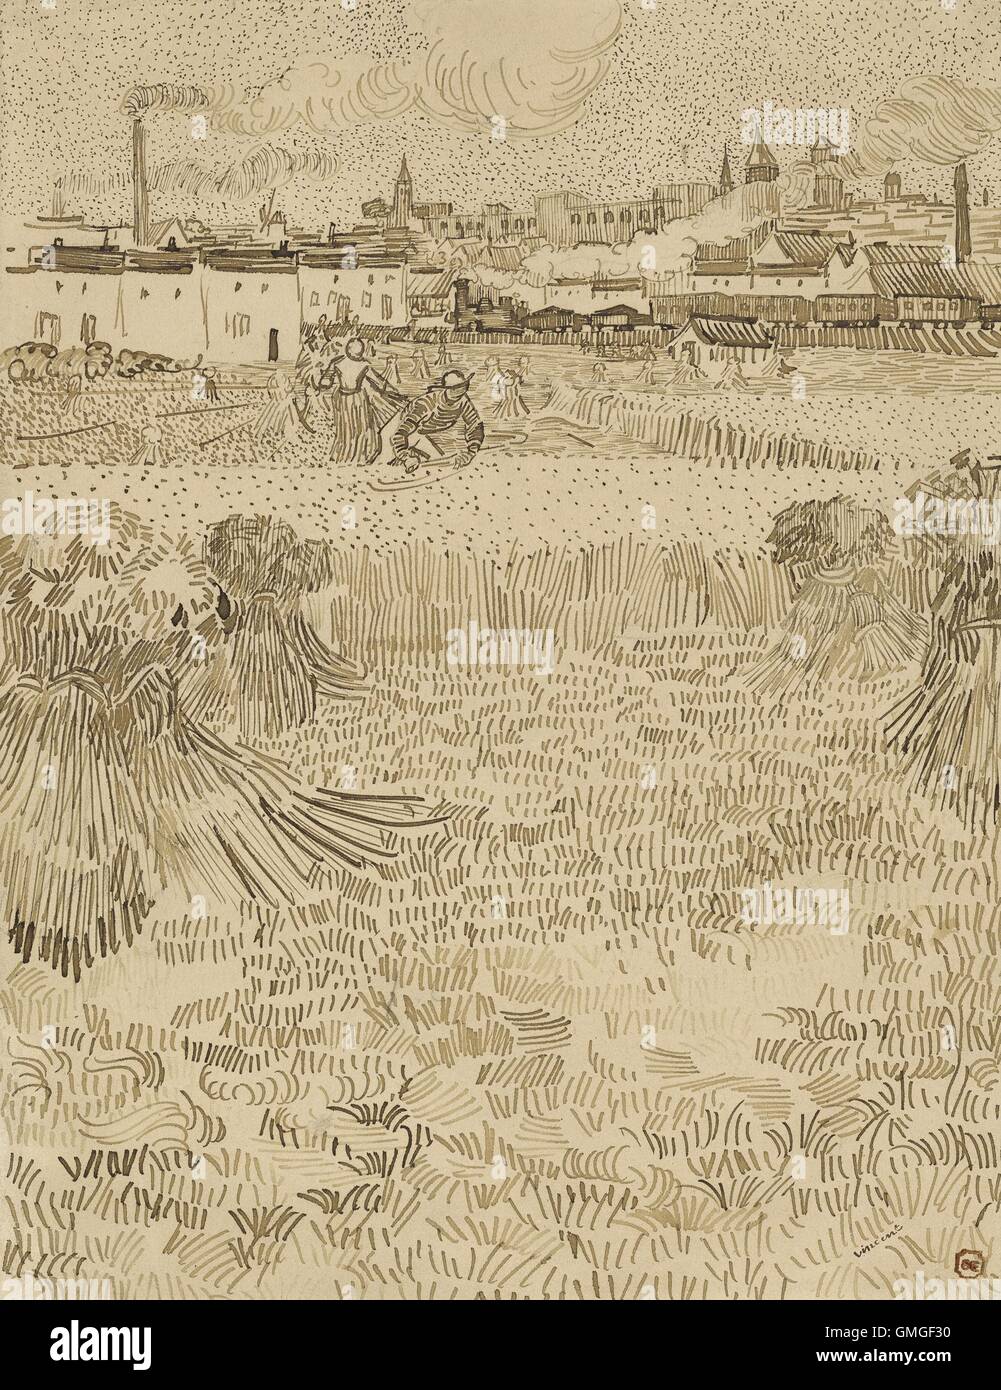 Arles : vue depuis le blé, par Vincent van Gogh, 1888, dessin néerlandais, plume et encre brune sur papier. Les agriculteurs travaillent dans un champ Banque D'Images